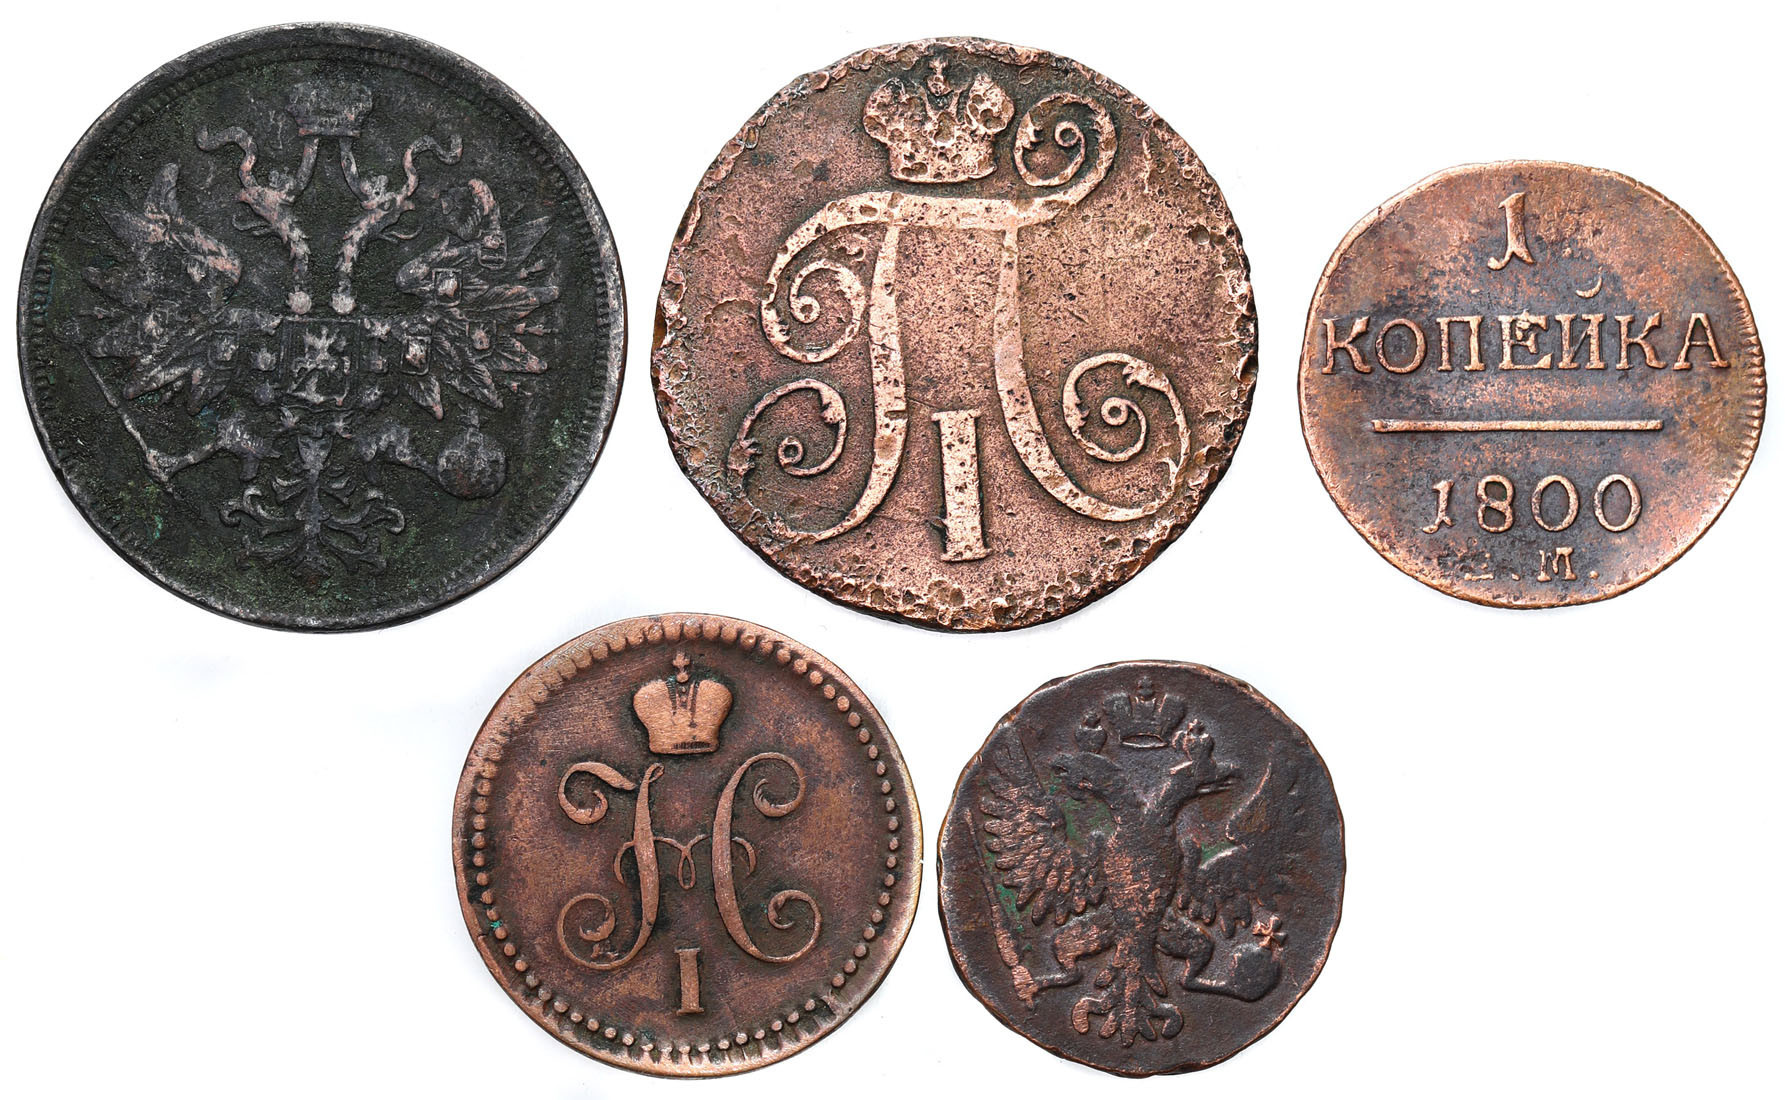 Rosja, Denga, kopiejka, 2 kopiejki, 50 kopiejek 1748-1860, zestaw 5 monet